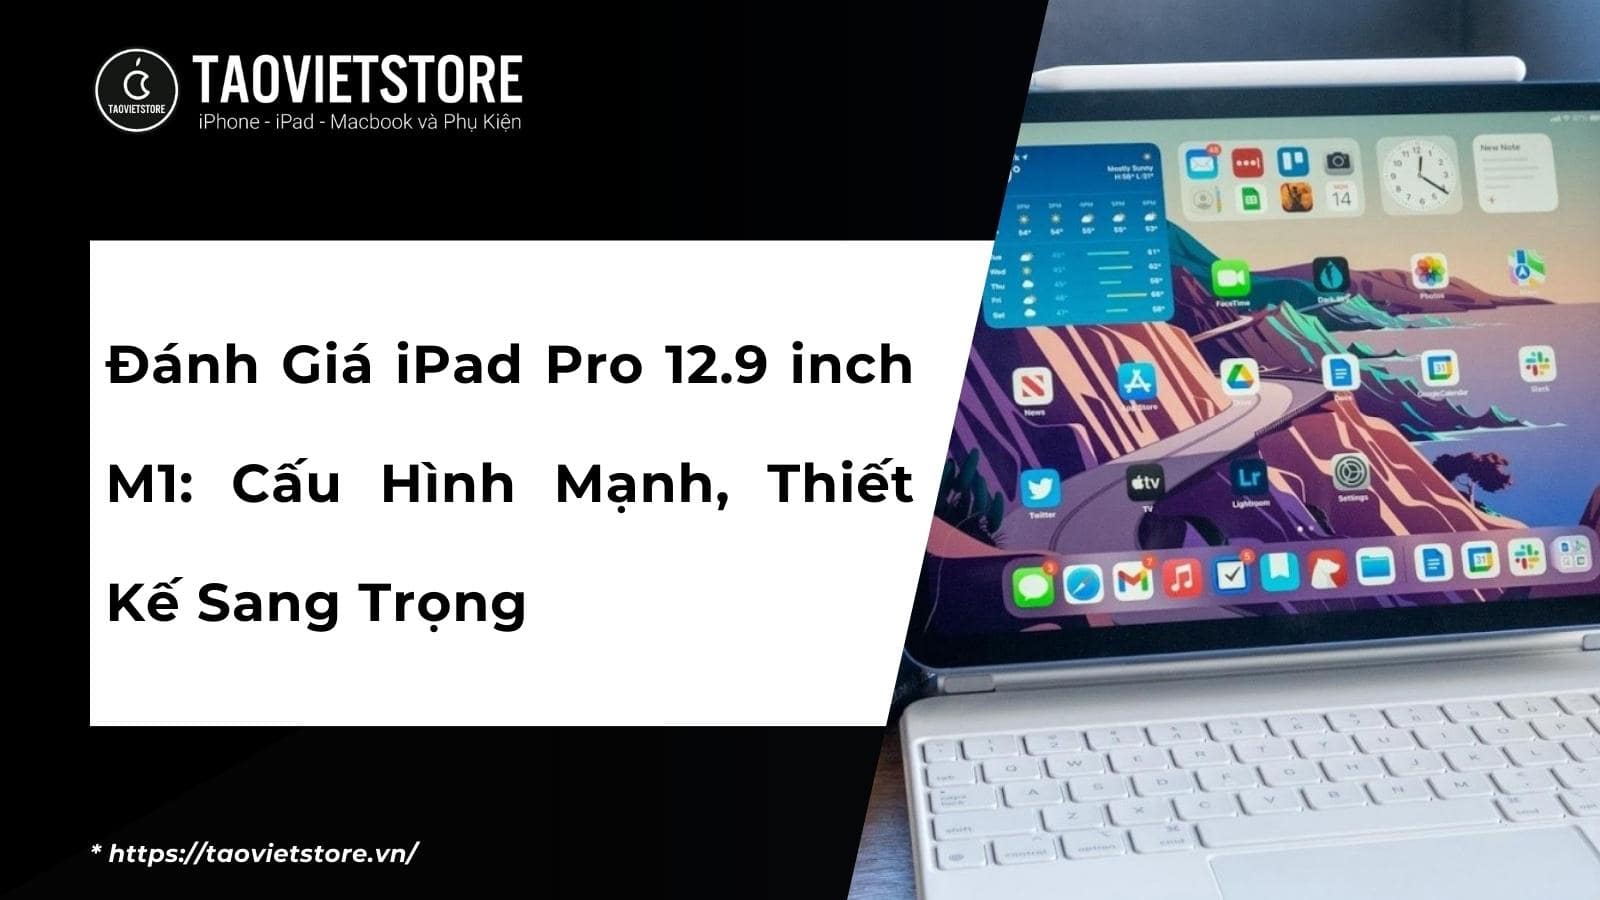 Đánh Giá iPad Pro 12.9 inch M1: Cấu Hình Mạnh, Thiết Kế Sang Trọng